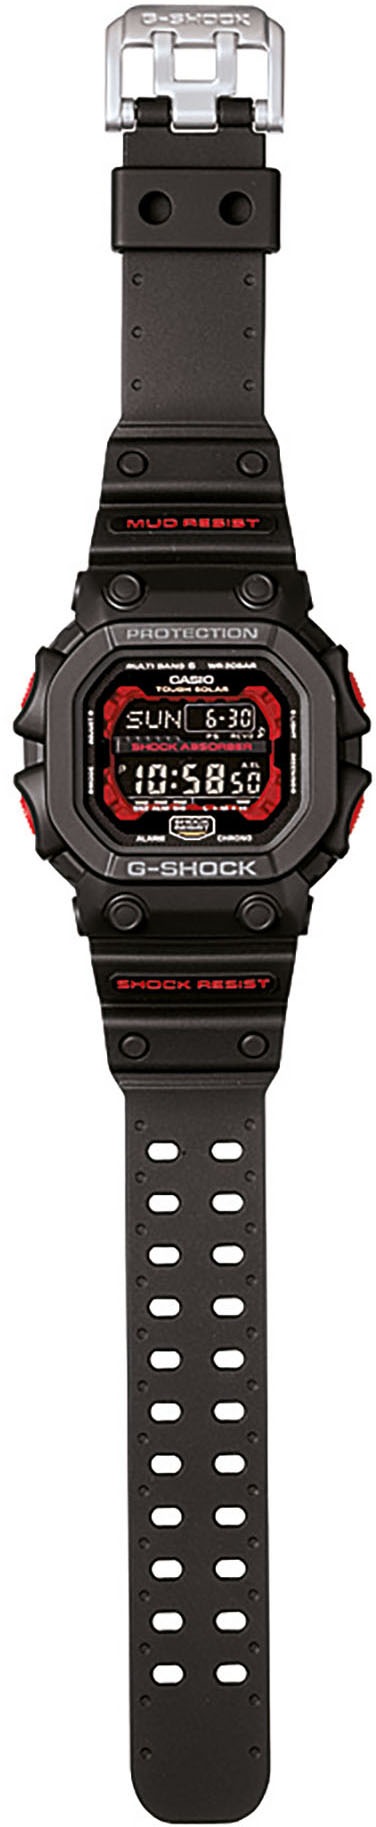 CASIO G-SHOCK Funkchronograph »GXW-56-1AER«, Solaruhr, Armbanduhr, Herrenuhr, digital, retro,bis 20 bar wasserdicht